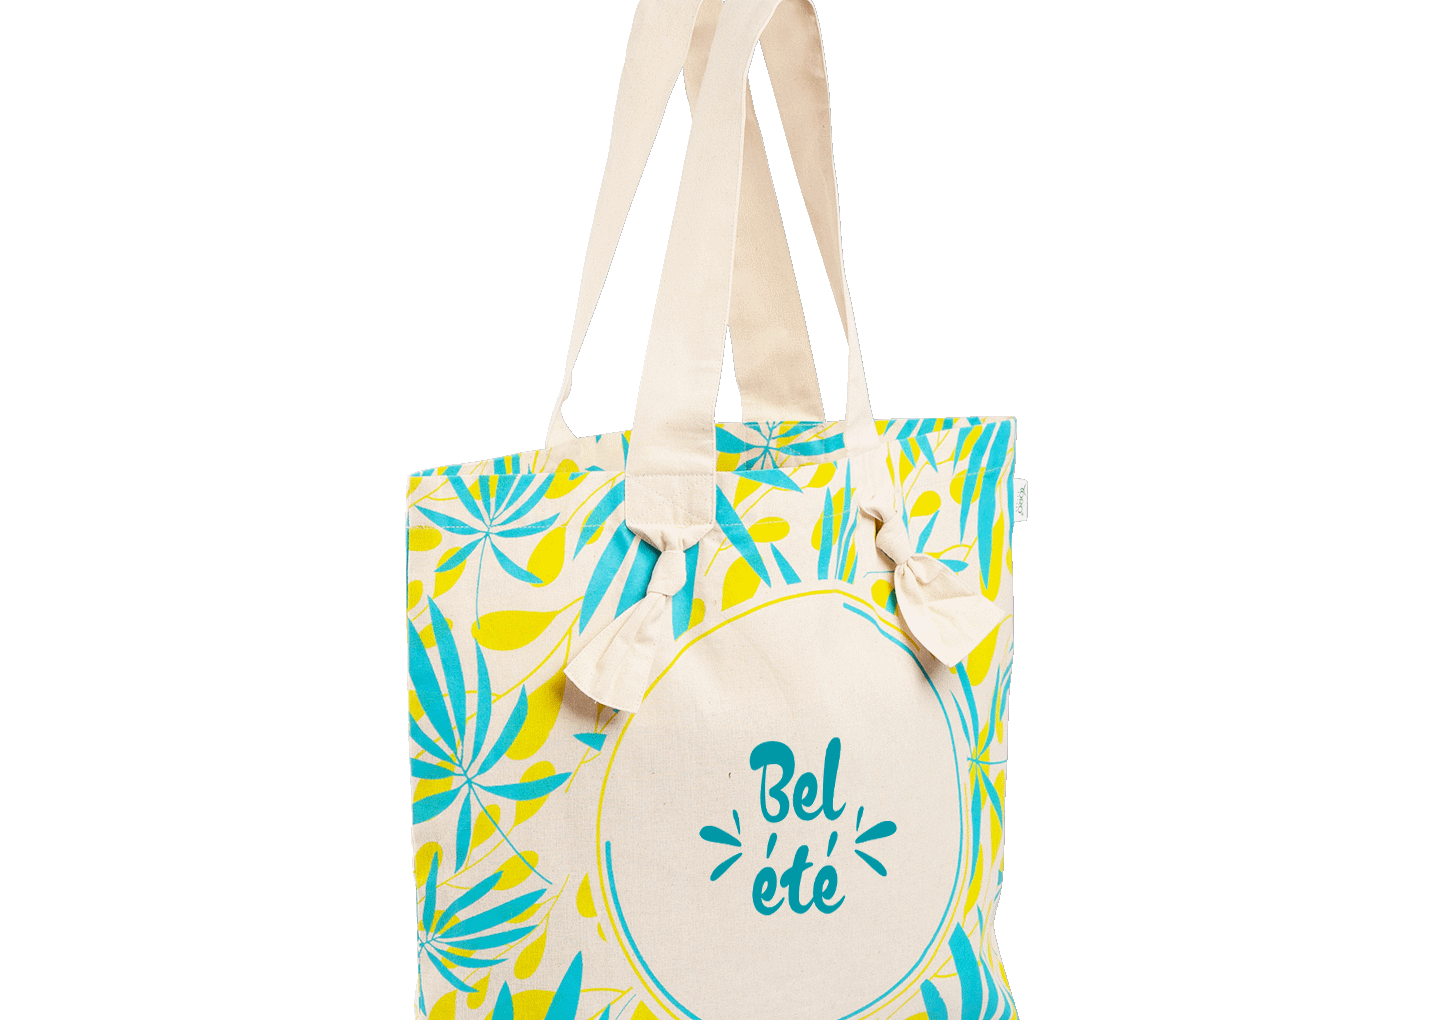 Sac coton réutilisable Bel été motif estival bleu et vert compagnon de plage idéal pour vos clients.